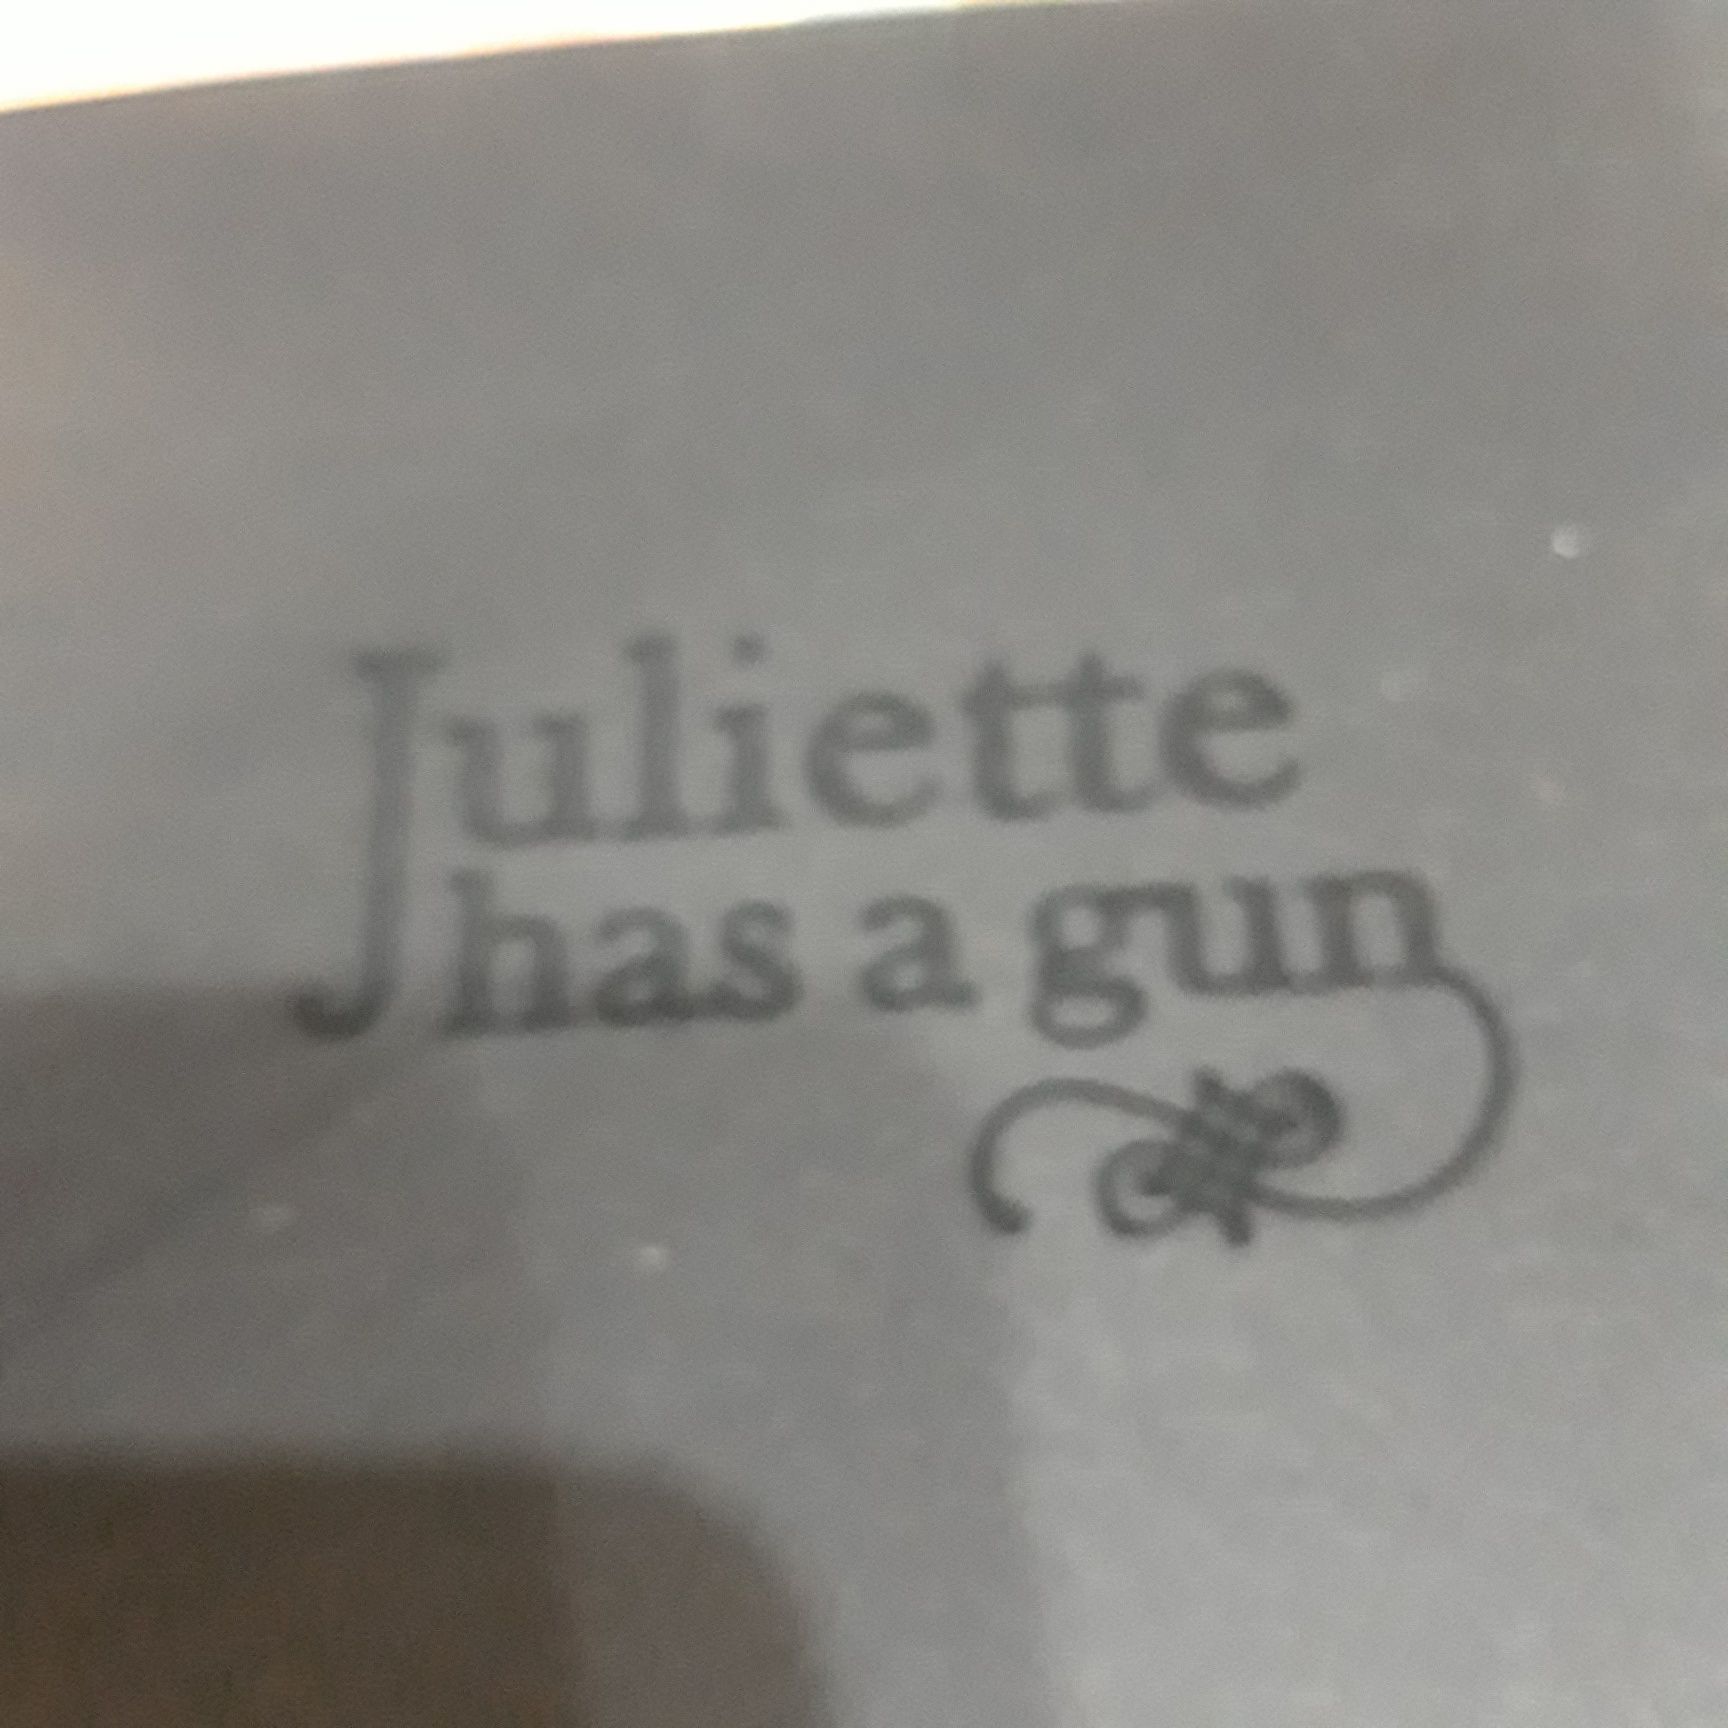 Juliet has a gun /Mmmm